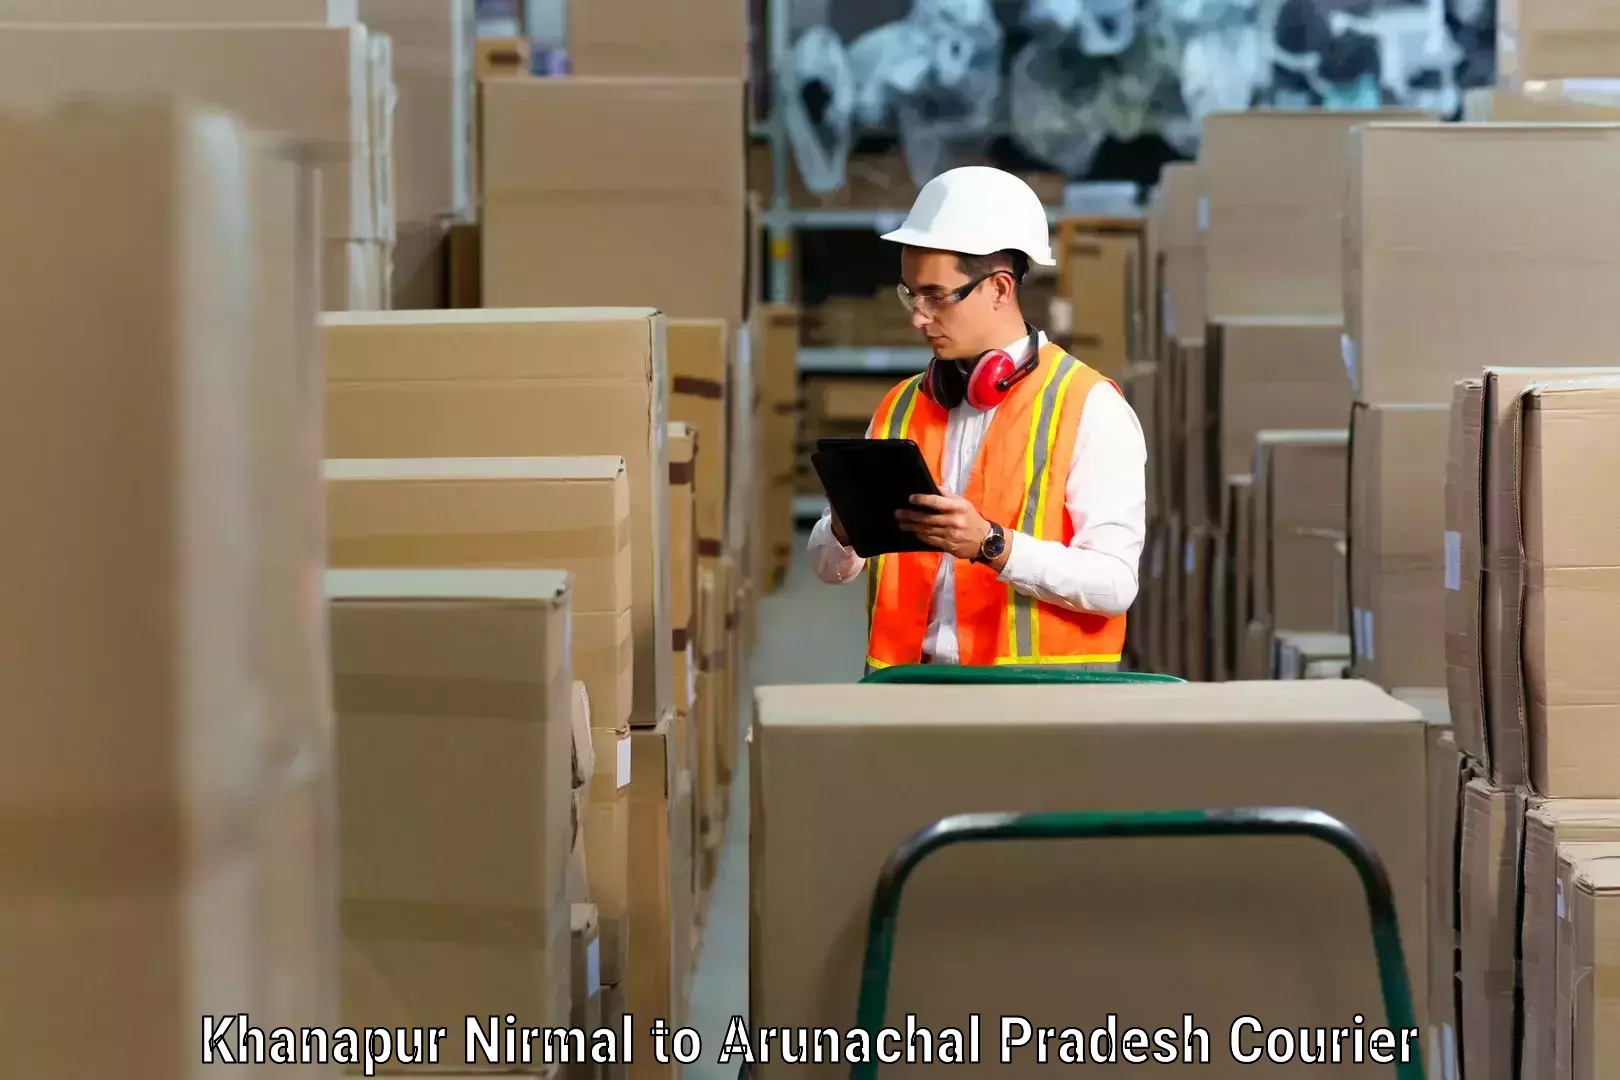 Packing and moving services Khanapur Nirmal to Kharsang